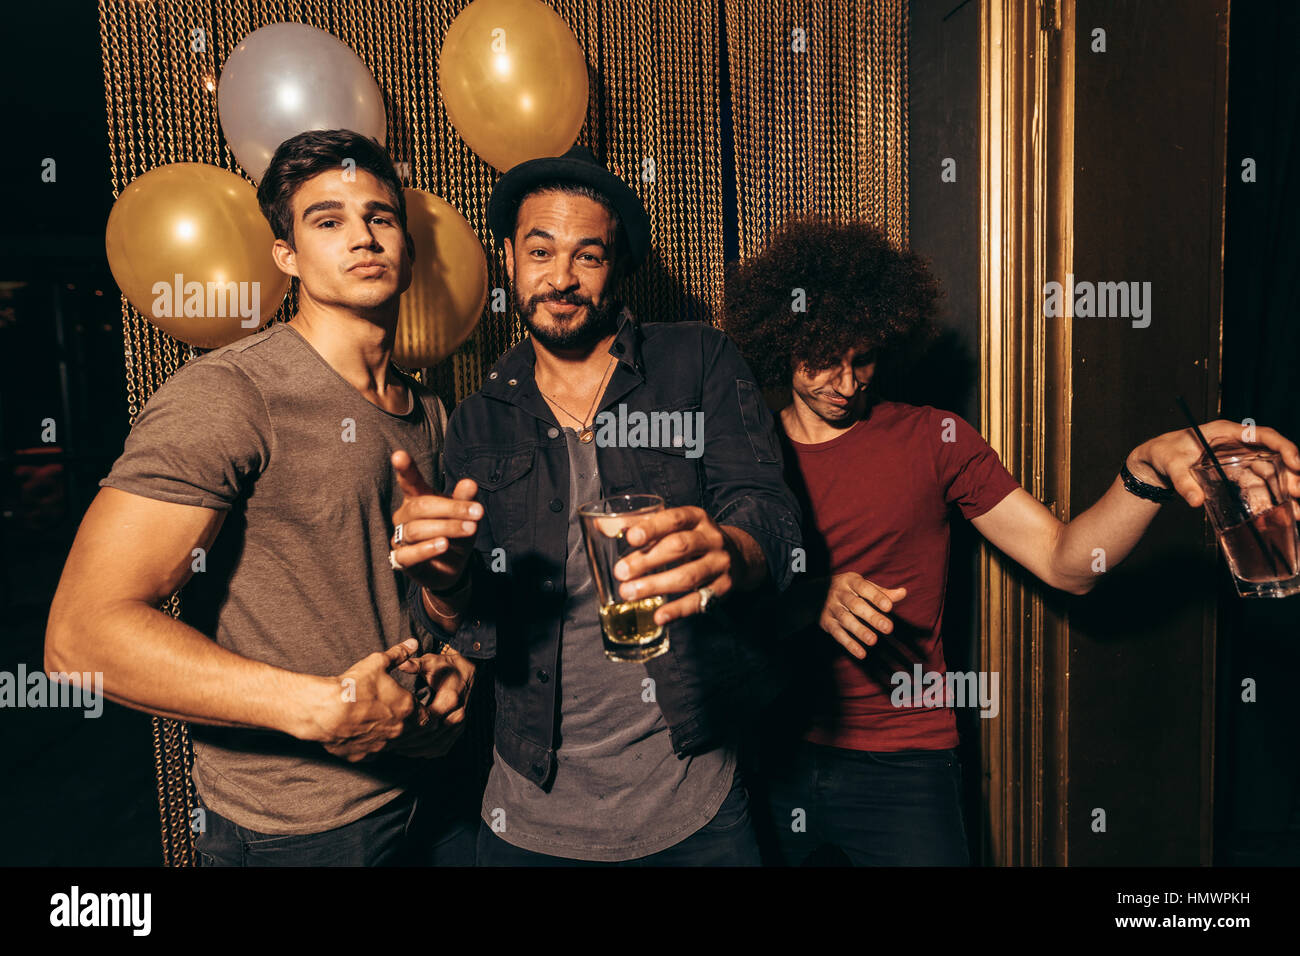 Portrait de trois jeunes hommes s'amuser à la discothèque. Groupe d'hommes au pub avec des boissons. Banque D'Images